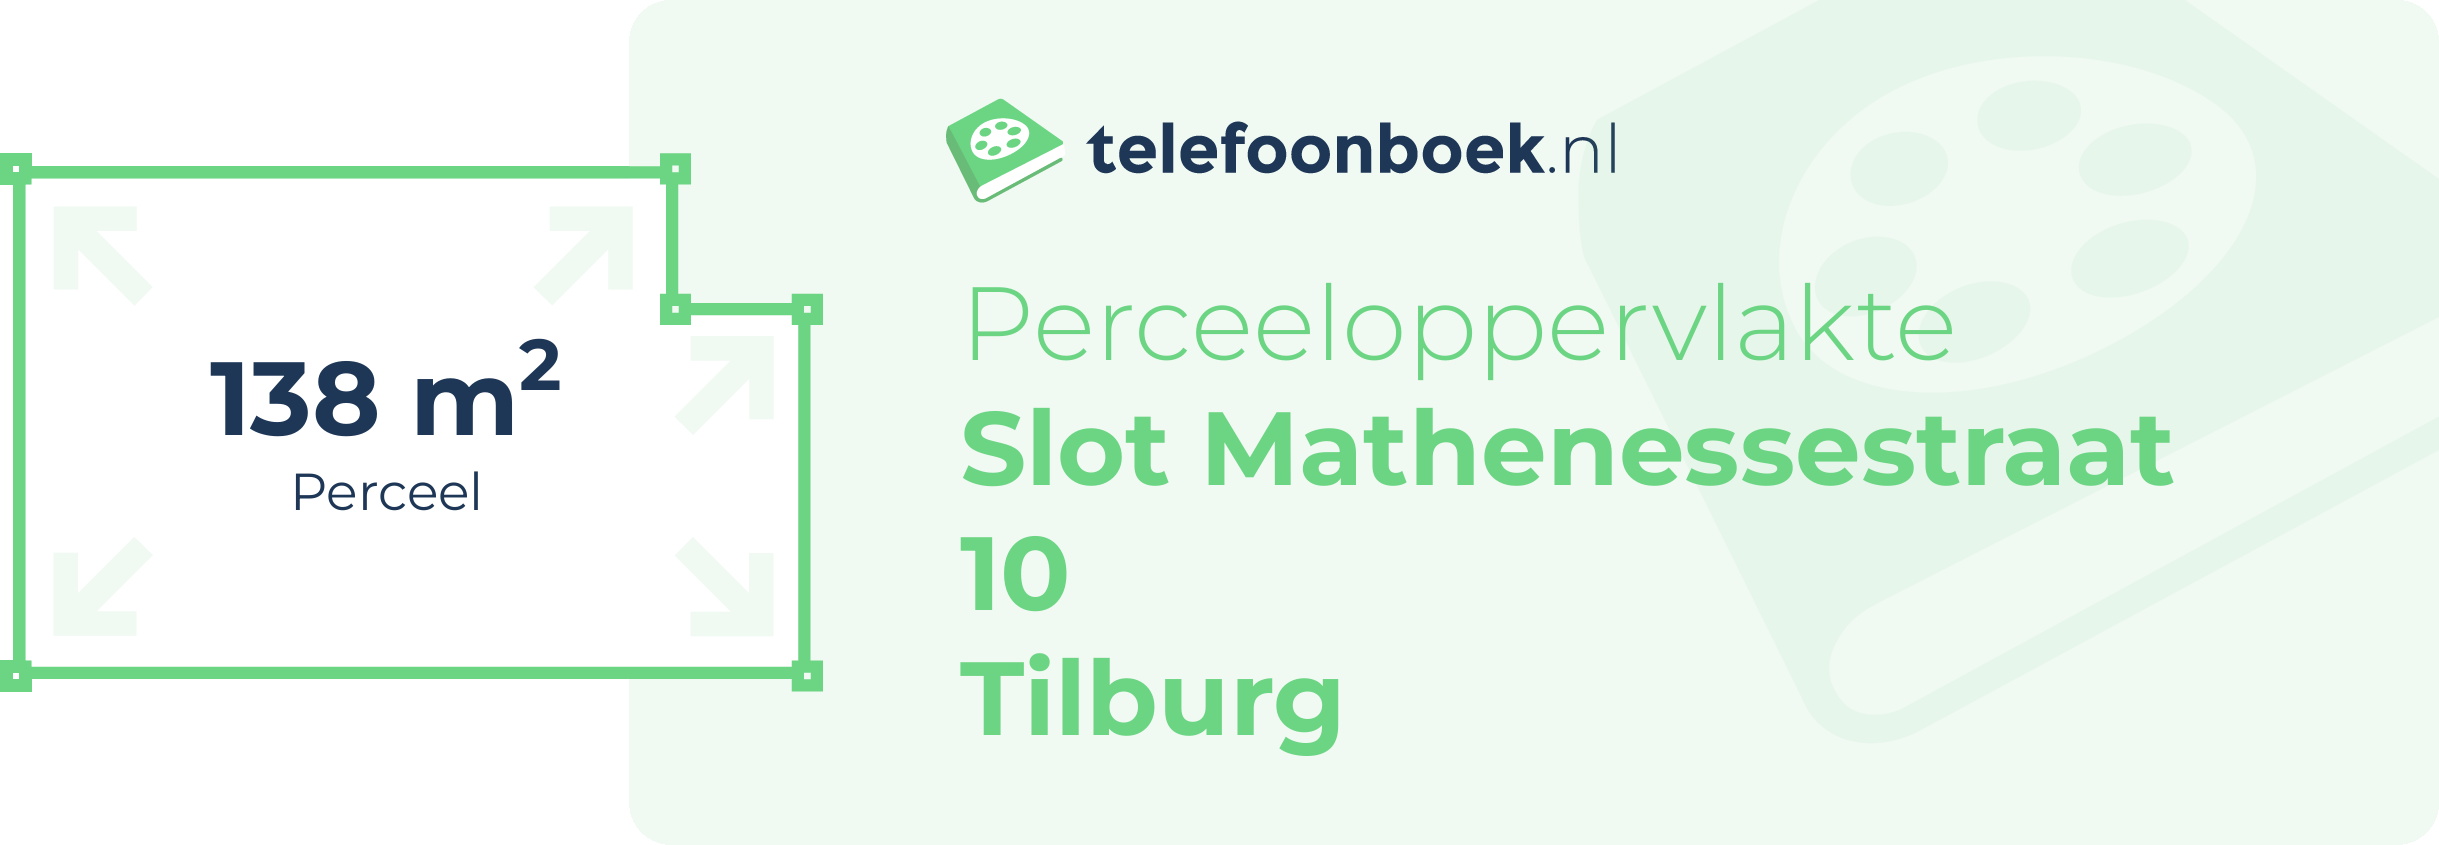 Perceeloppervlakte Slot Mathenessestraat 10 Tilburg